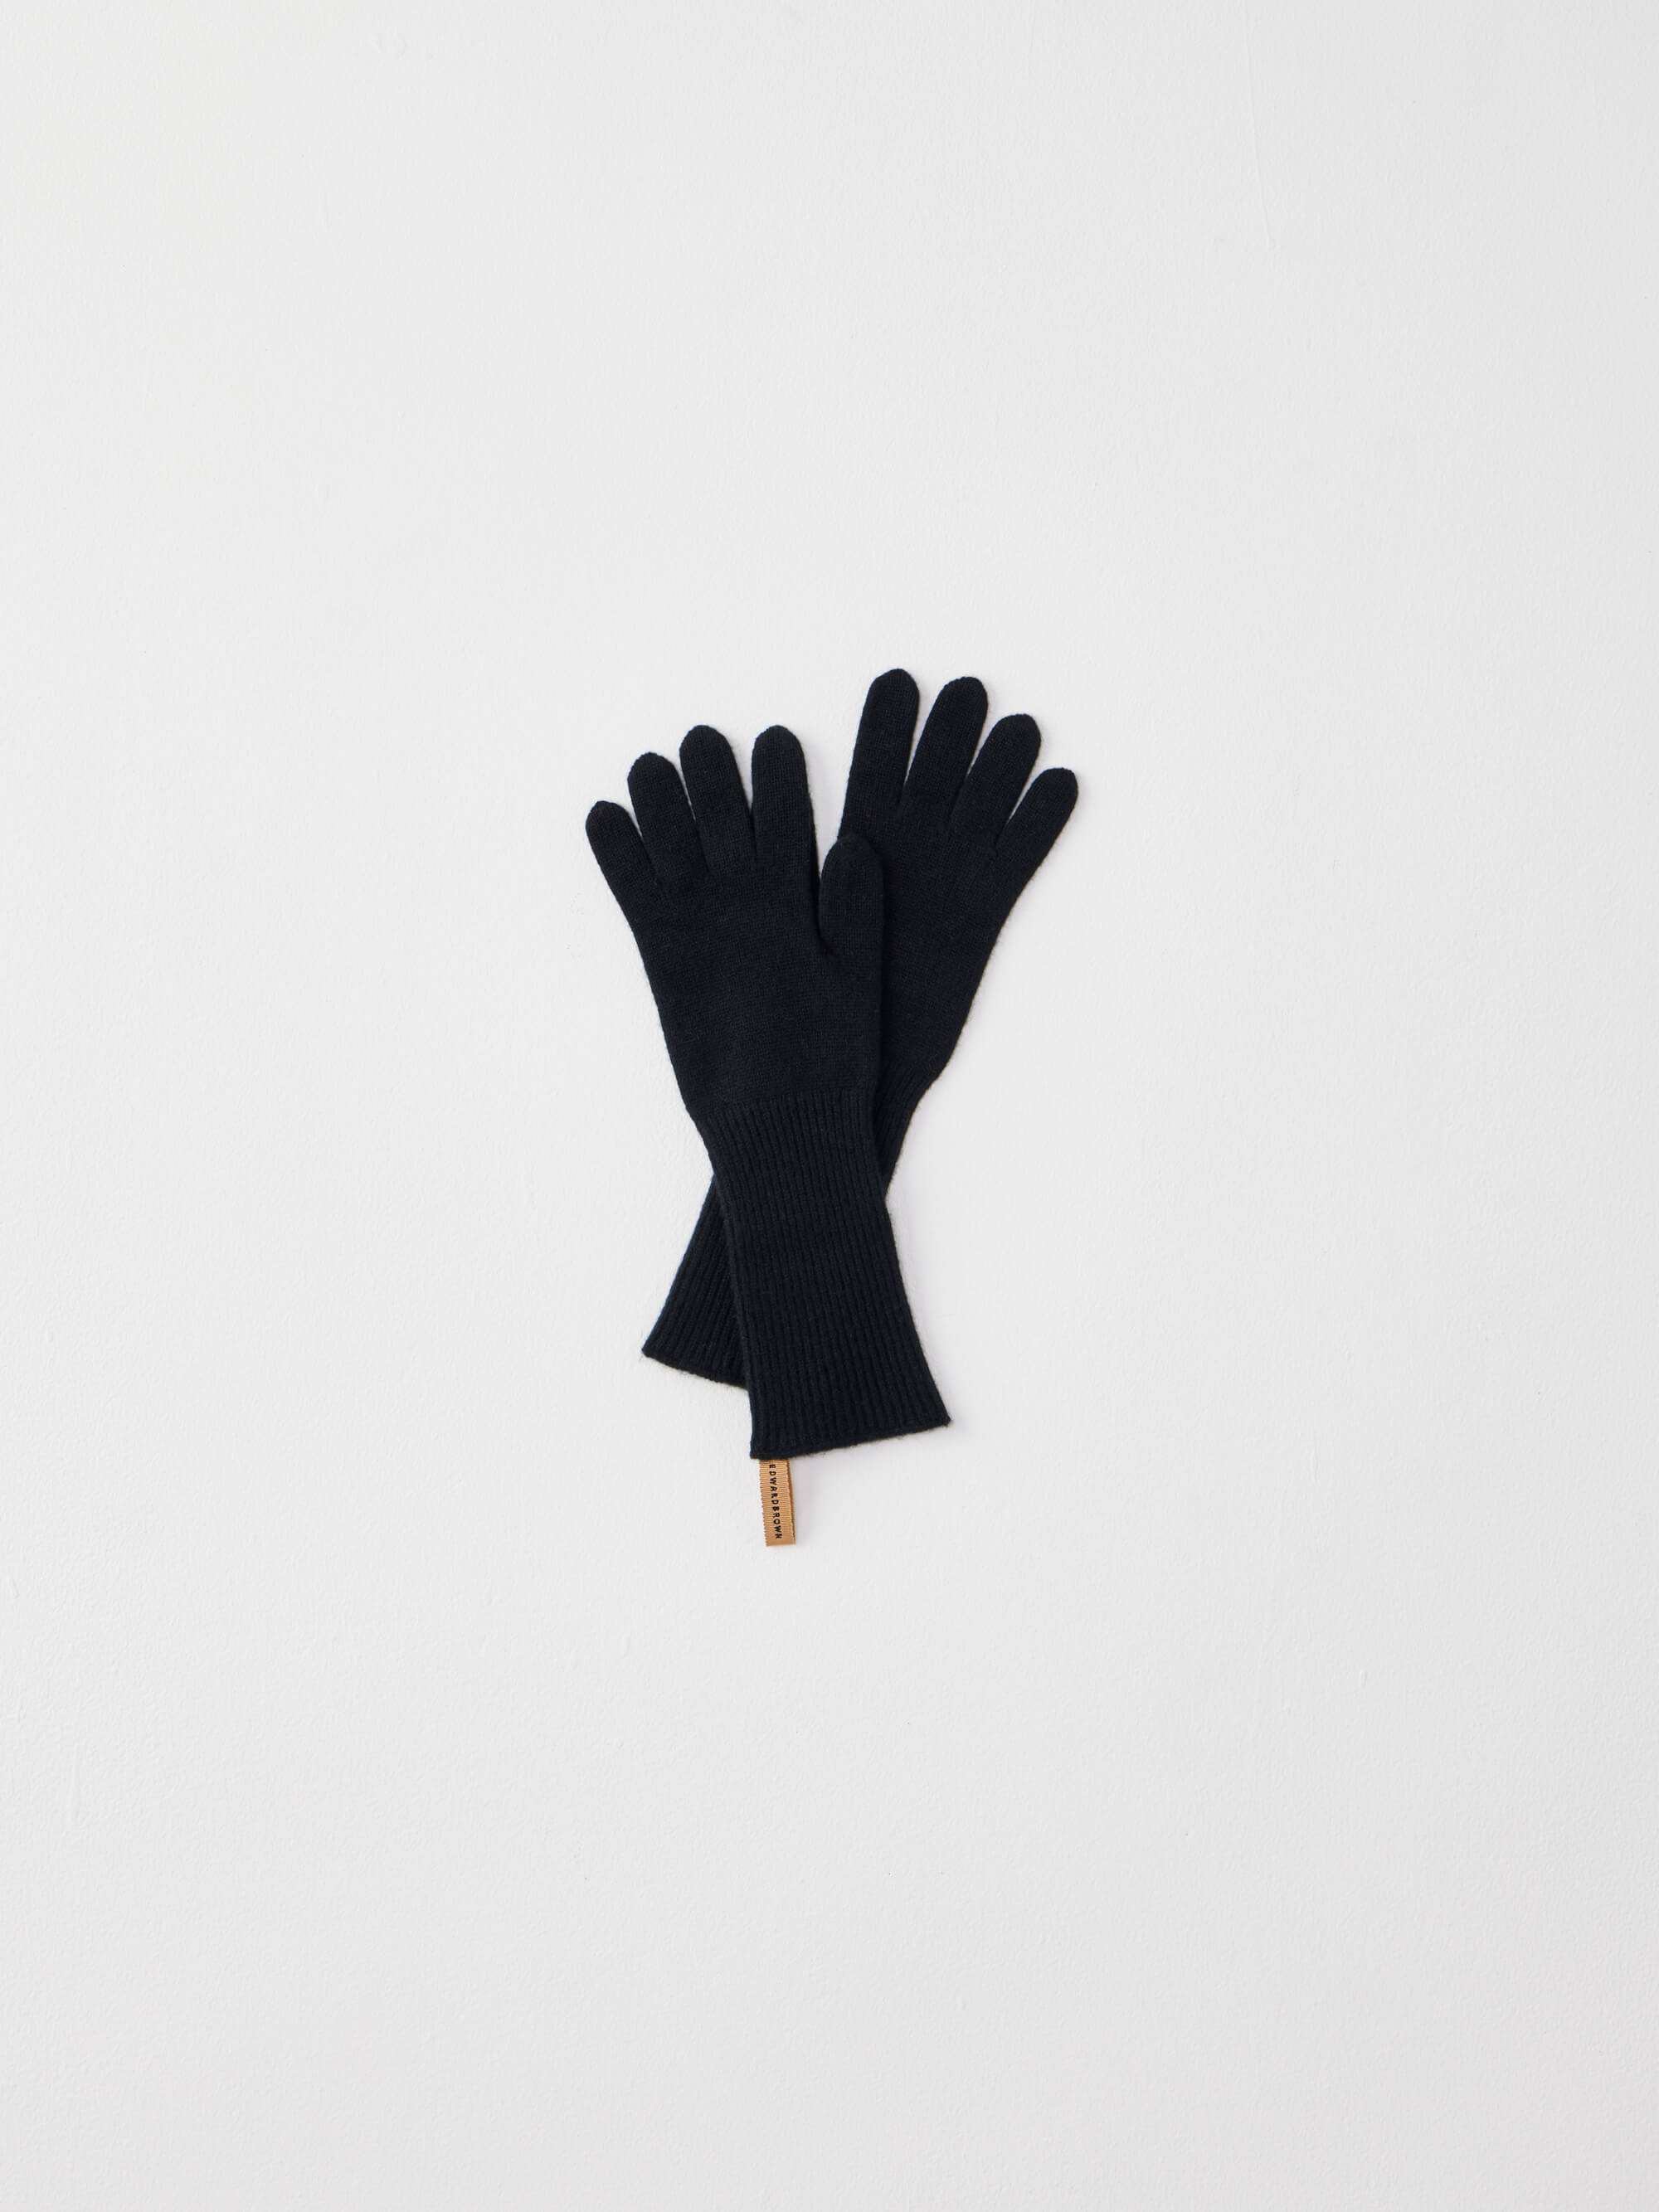 カシミヤグローブ ブラック Cashmere gloves Black  | エドワードブラウン  EDWARD BROWN